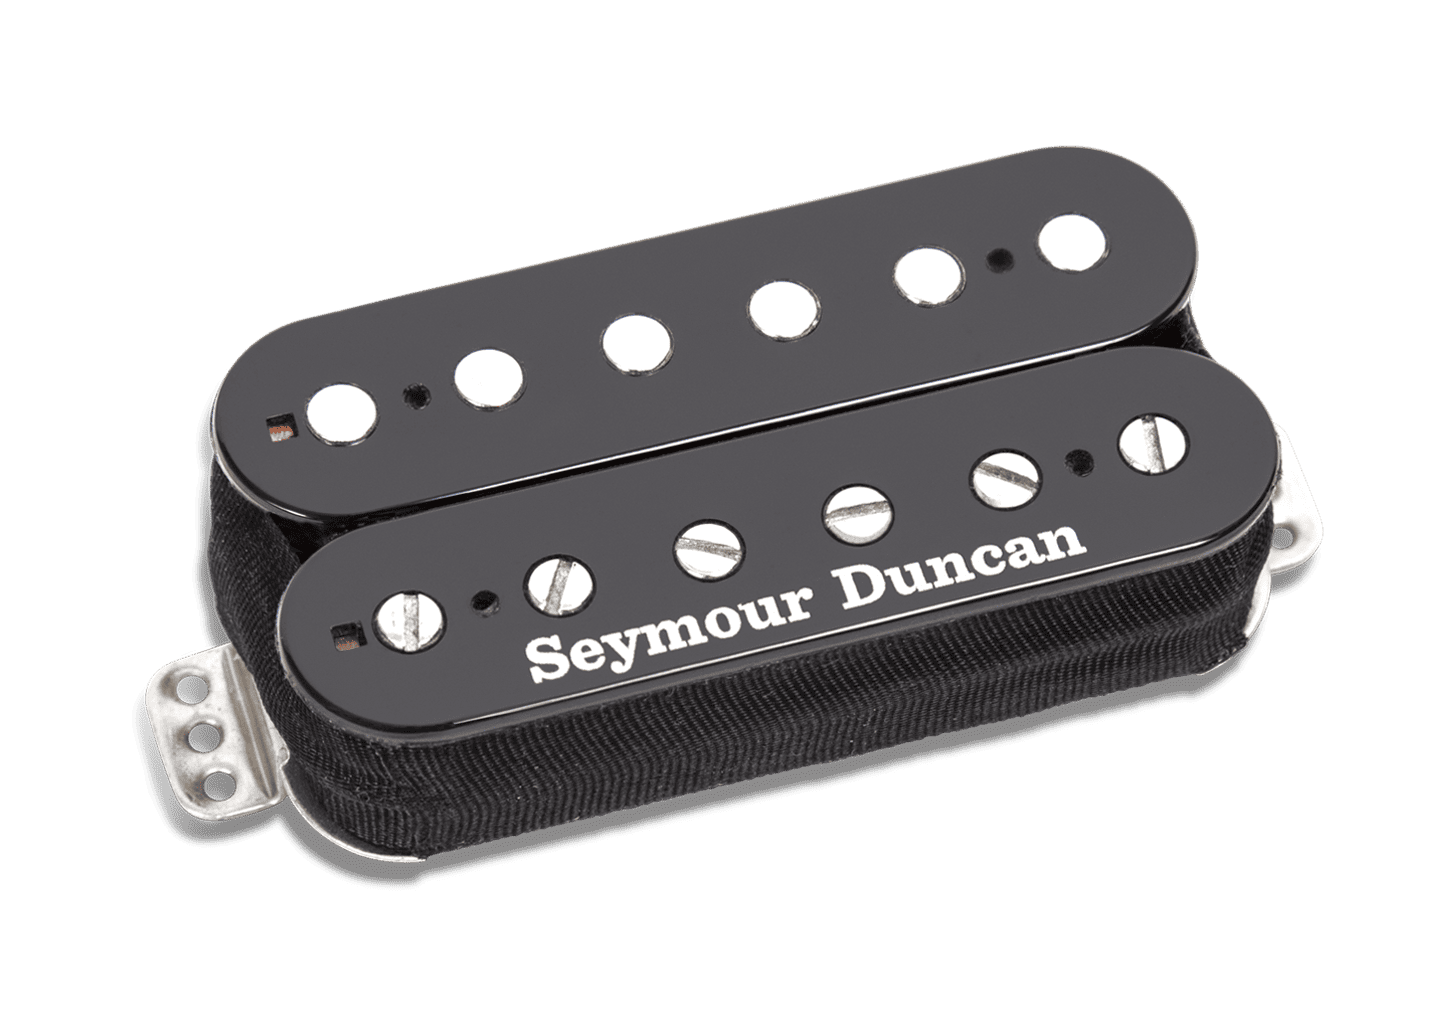 Seymour Duncan 59™ Custom Hybrid Pickup | Seymour Duncan